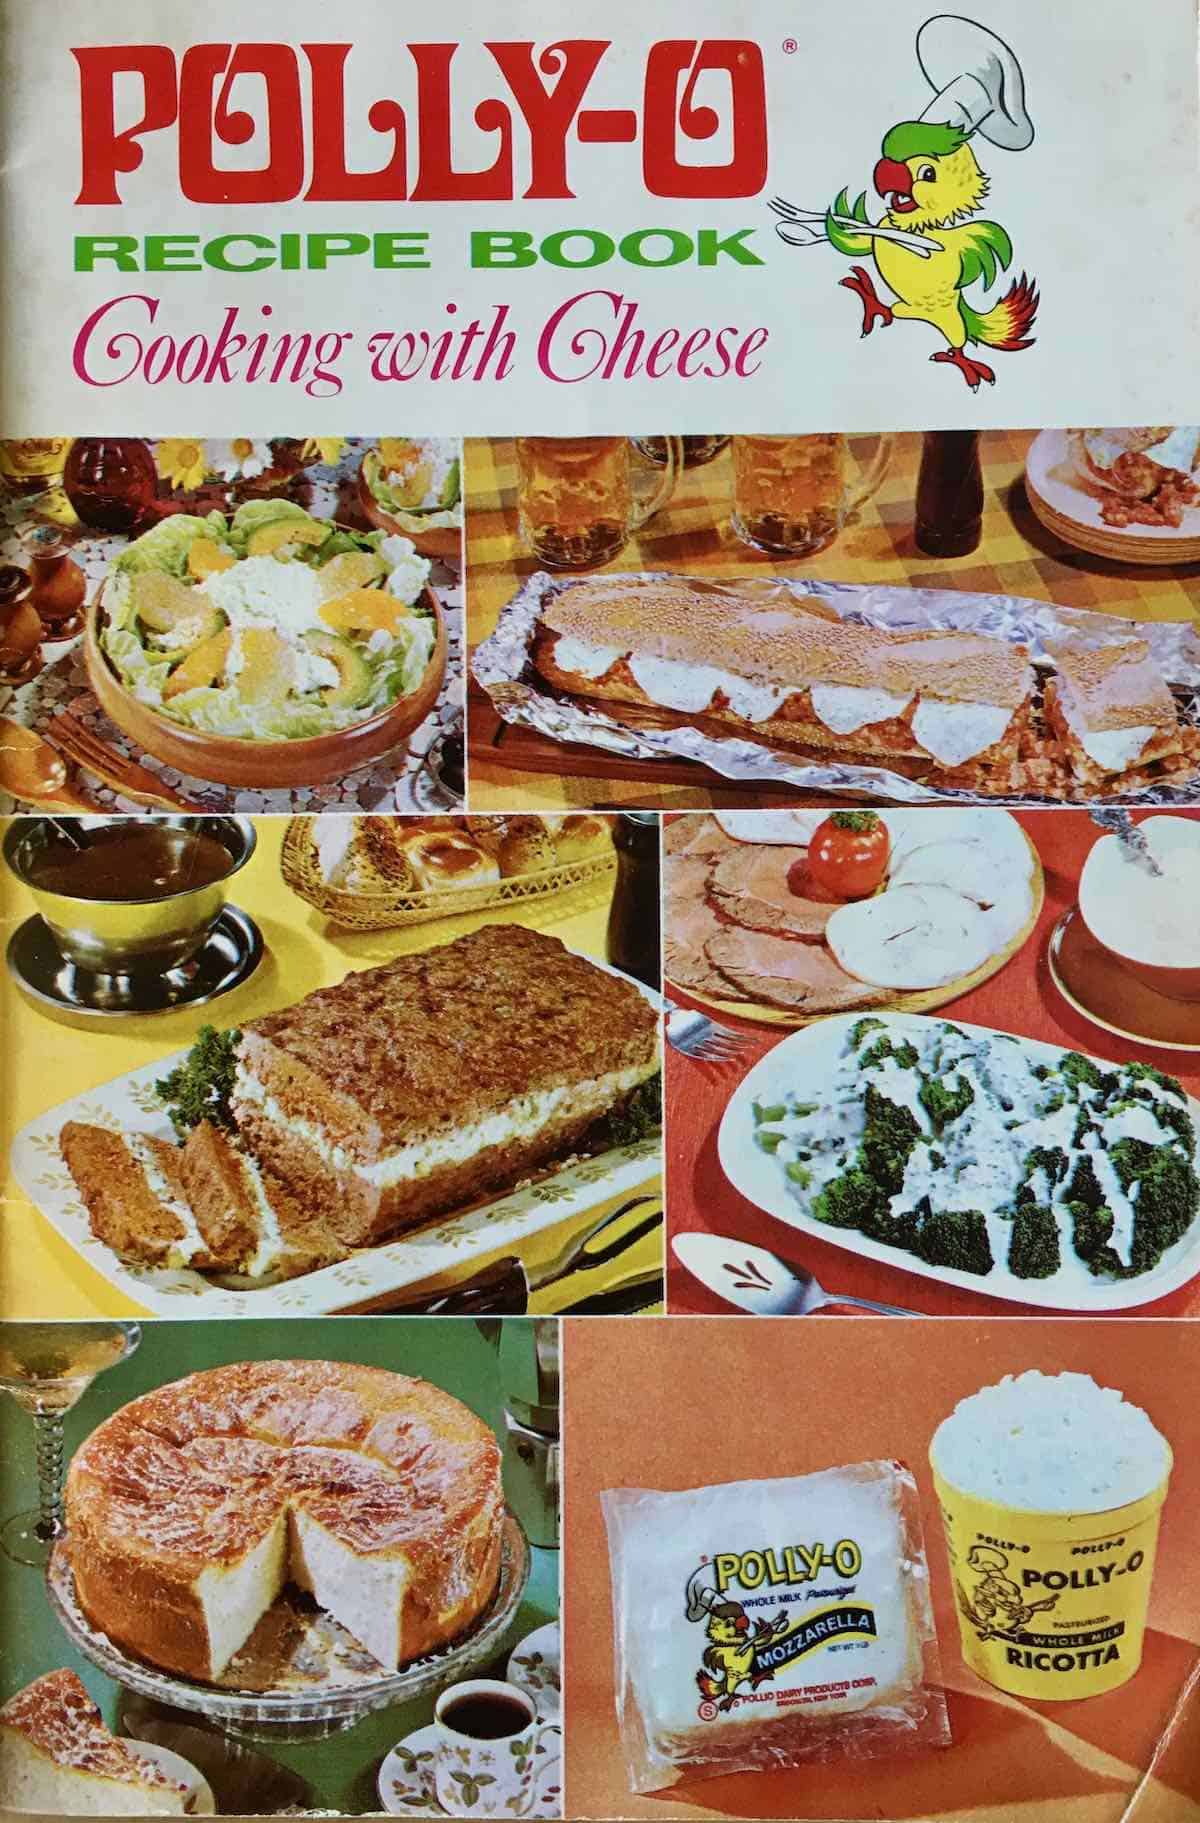 Polly-O cookbook cover.